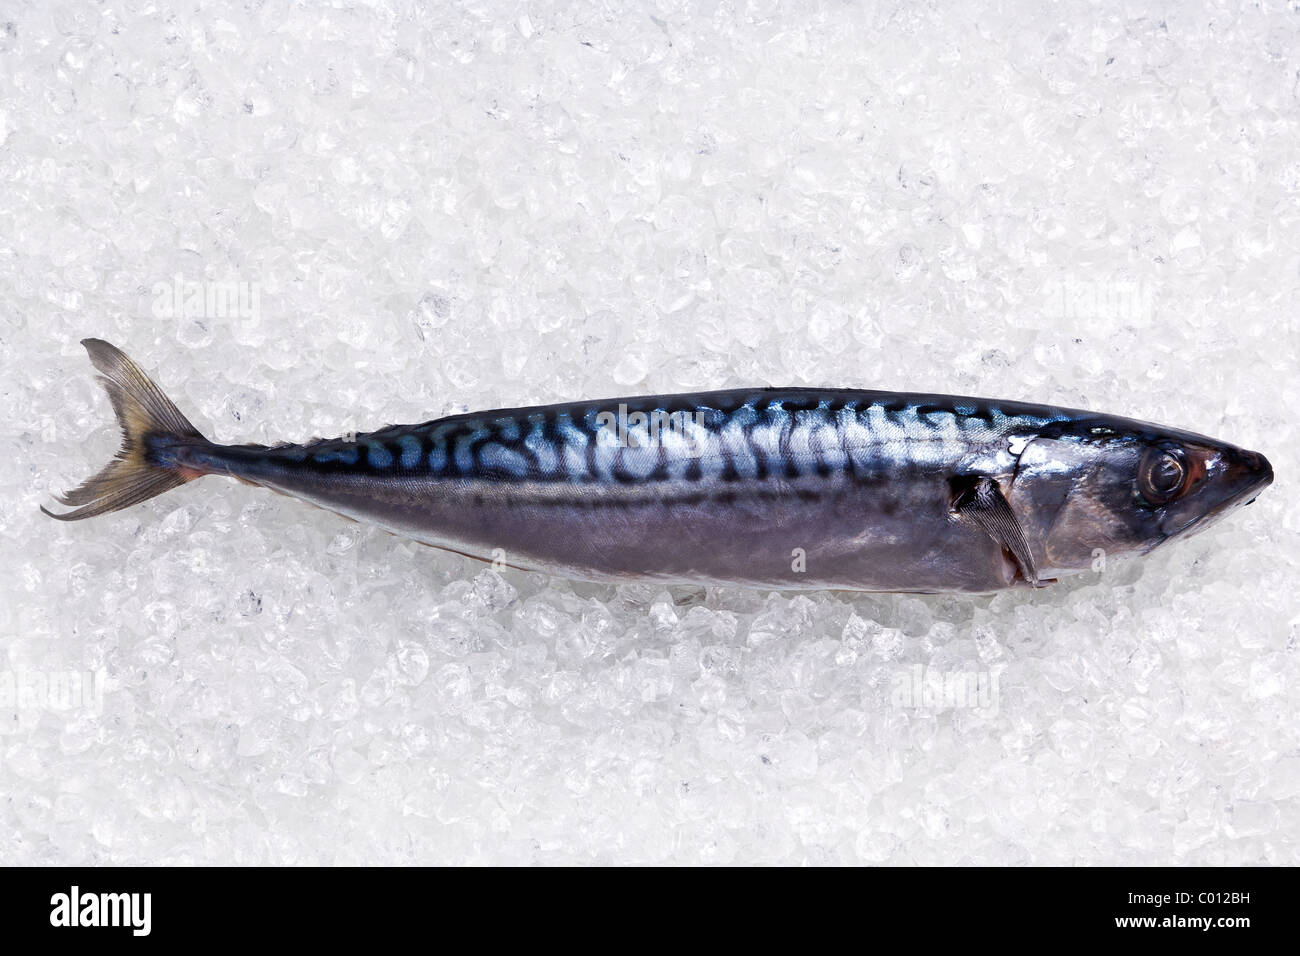 Photo of a whole fresh mackerel on crushed ice. Stock Photo